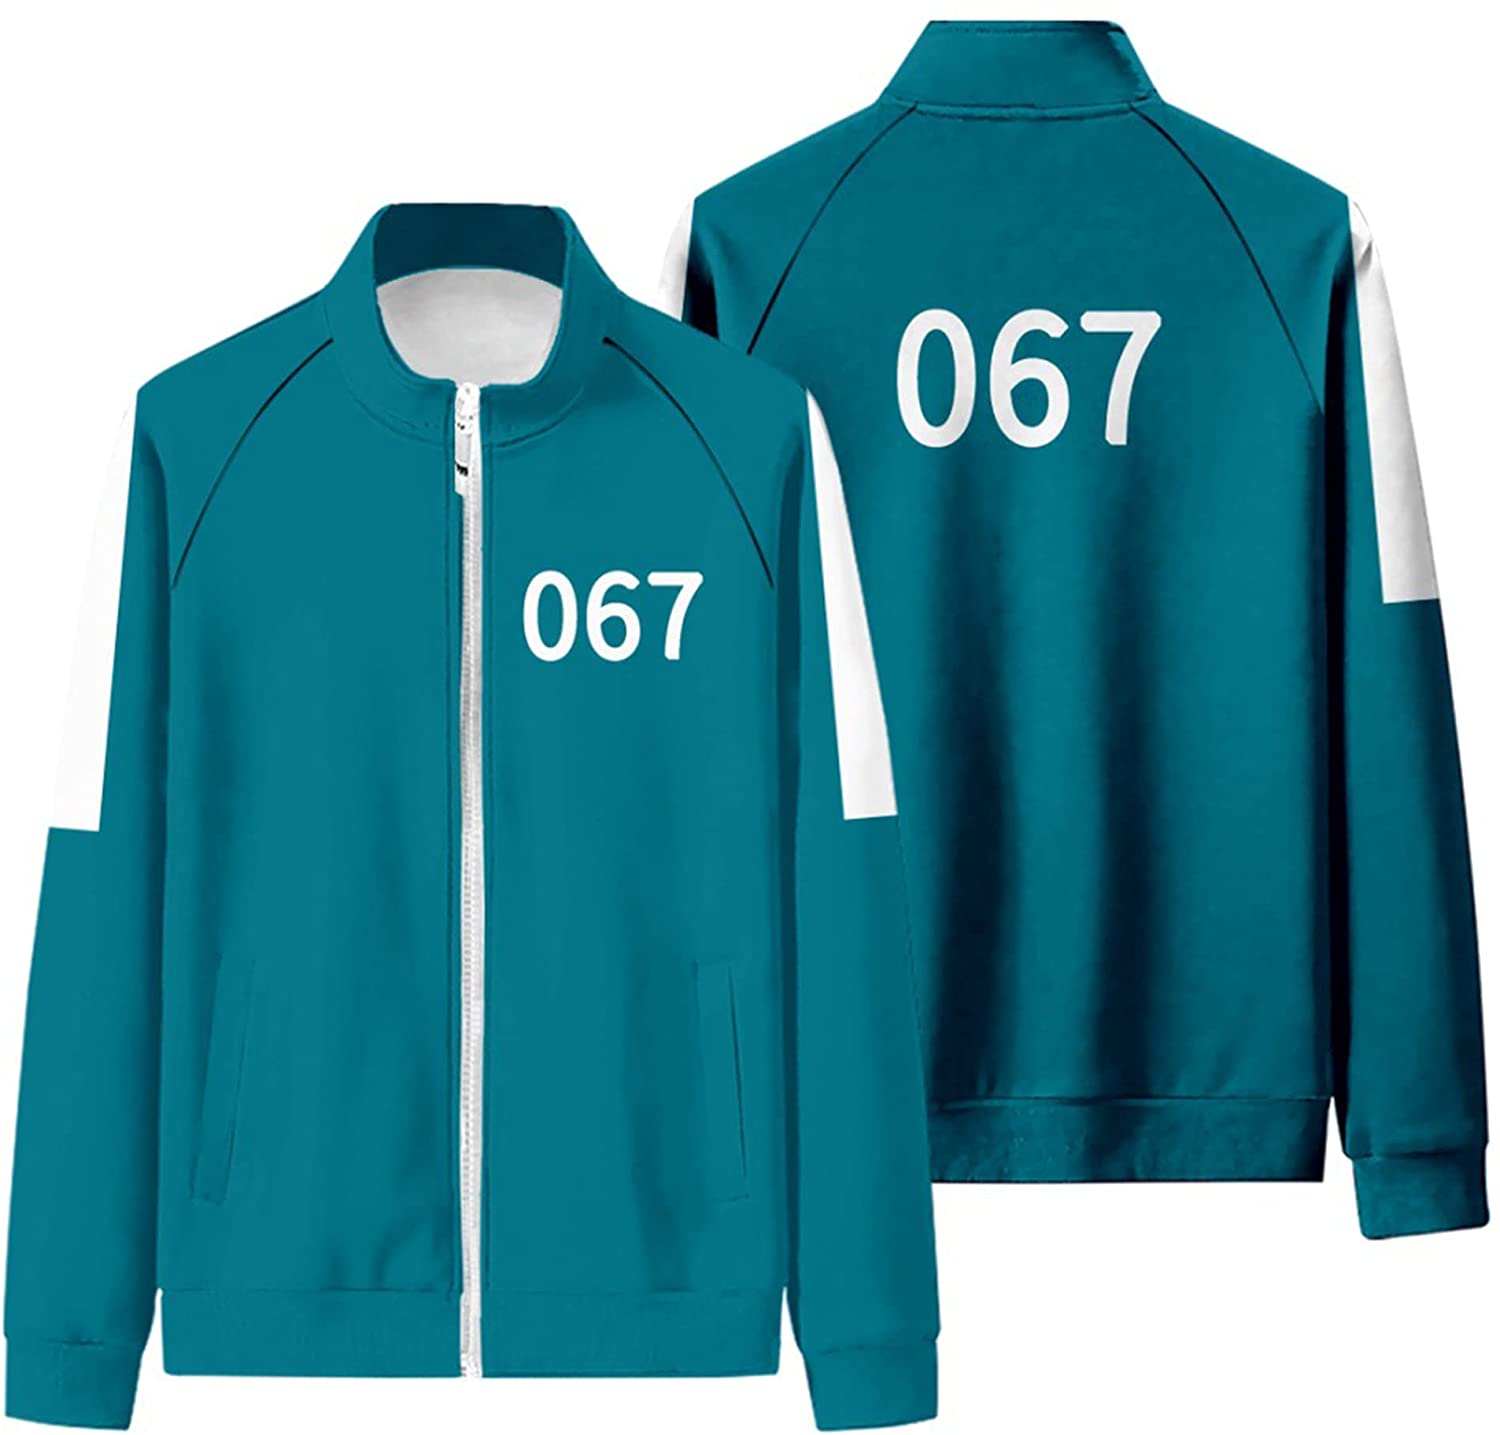 绿色女生运动服上衣 067号-9Rabbit北美情趣用品